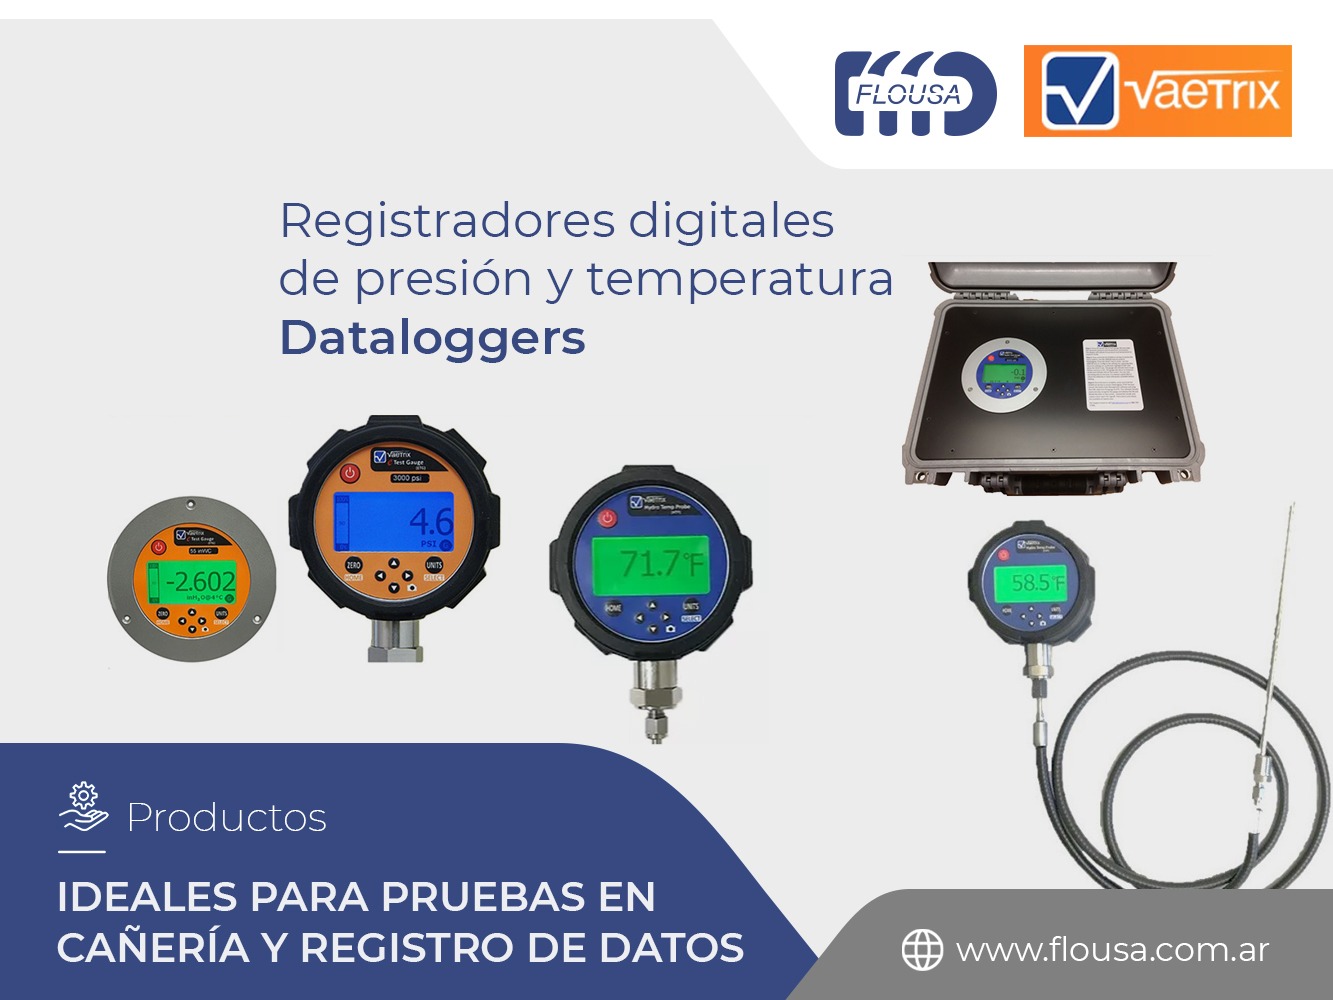 Registradores digitales de presión y temperatura - Vaetrix - FLOUSA